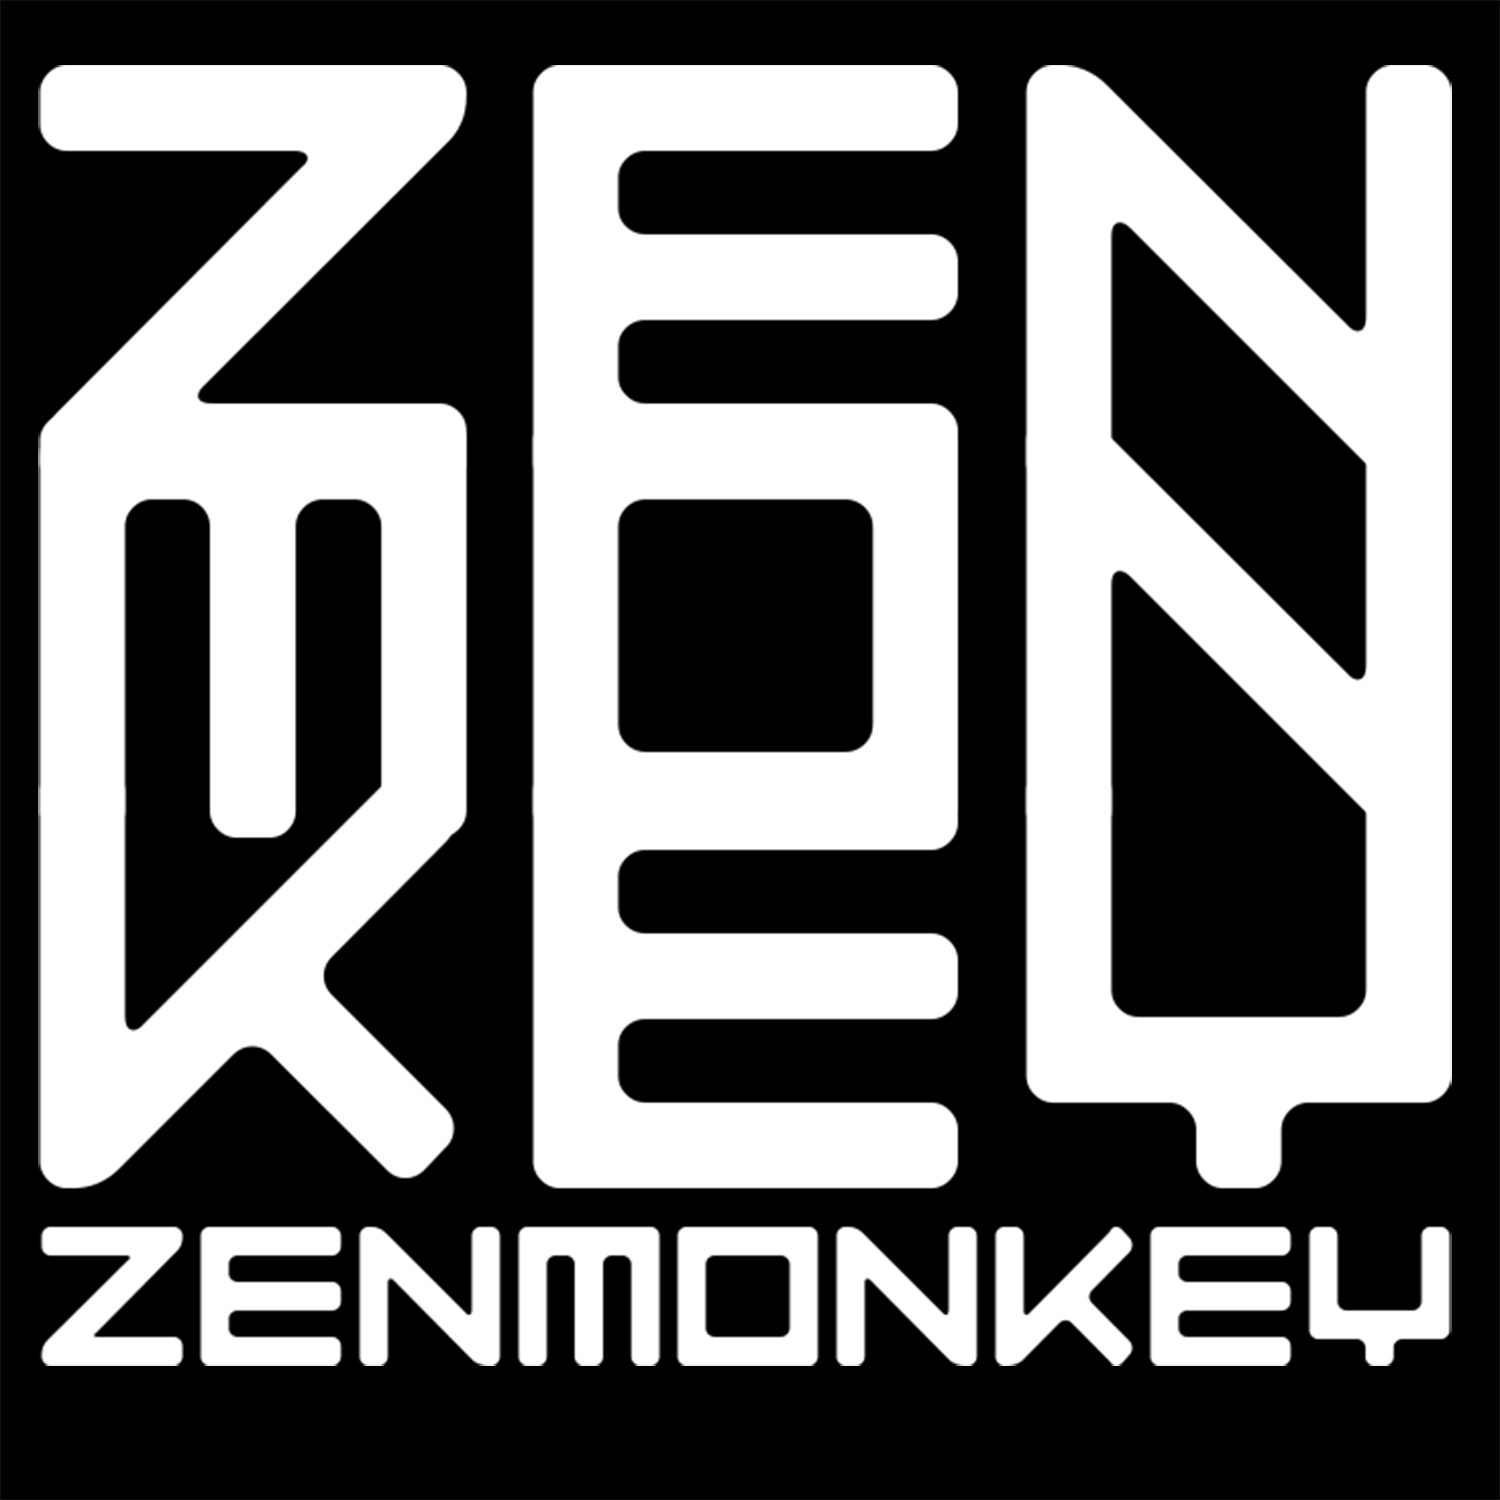 Zenmonkey Music